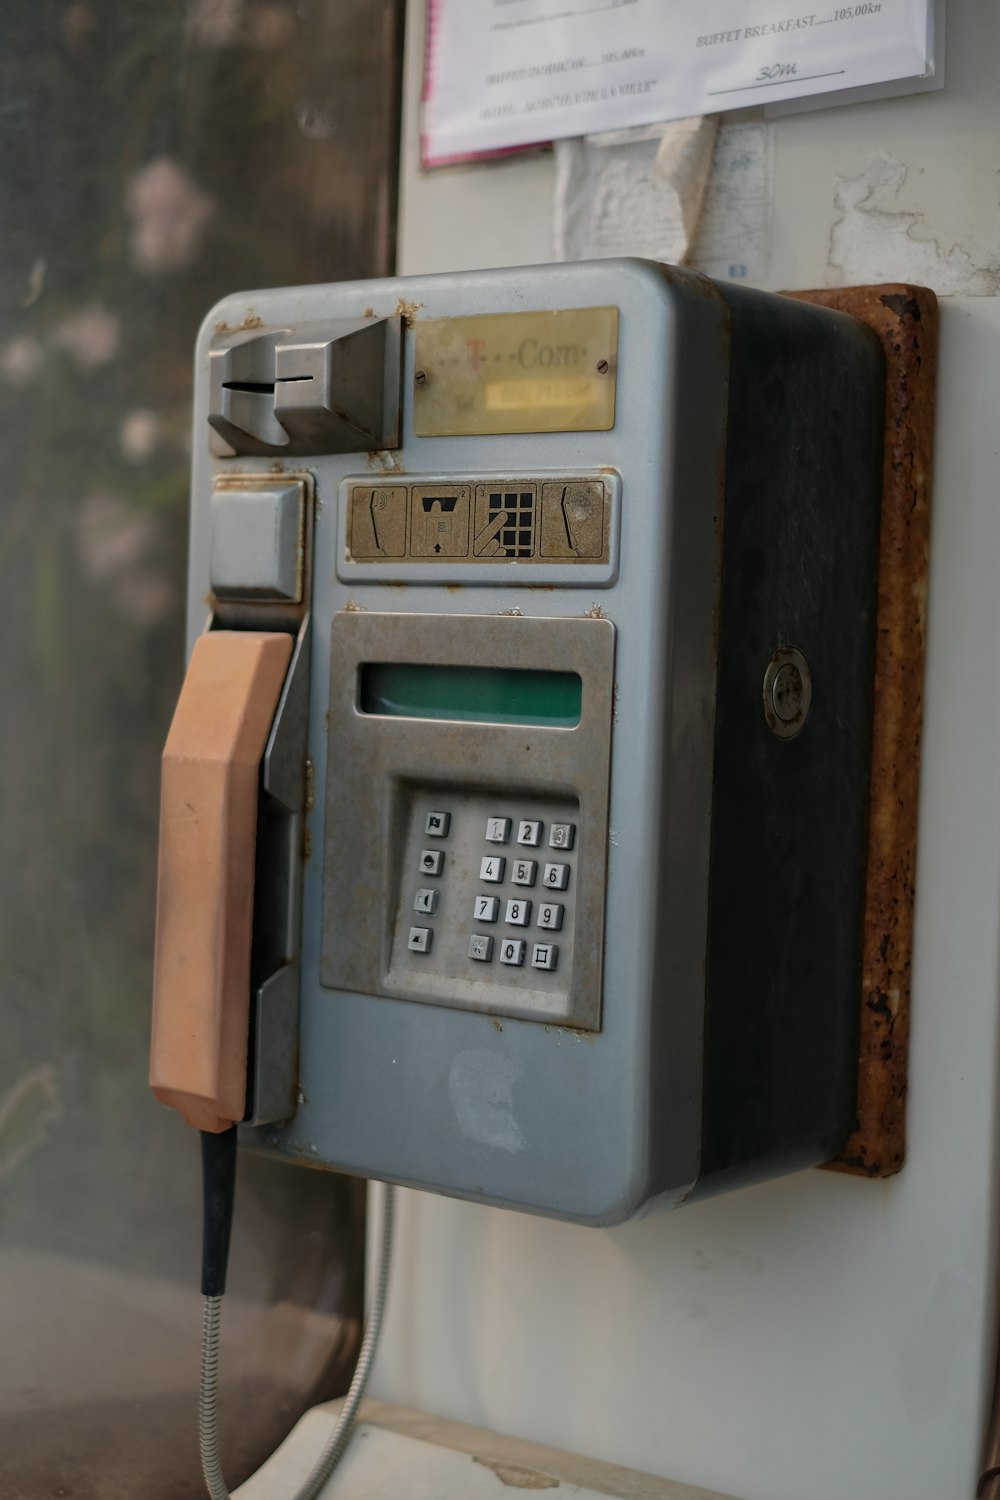 Teléfono público gris y marrón en la foto enfocada